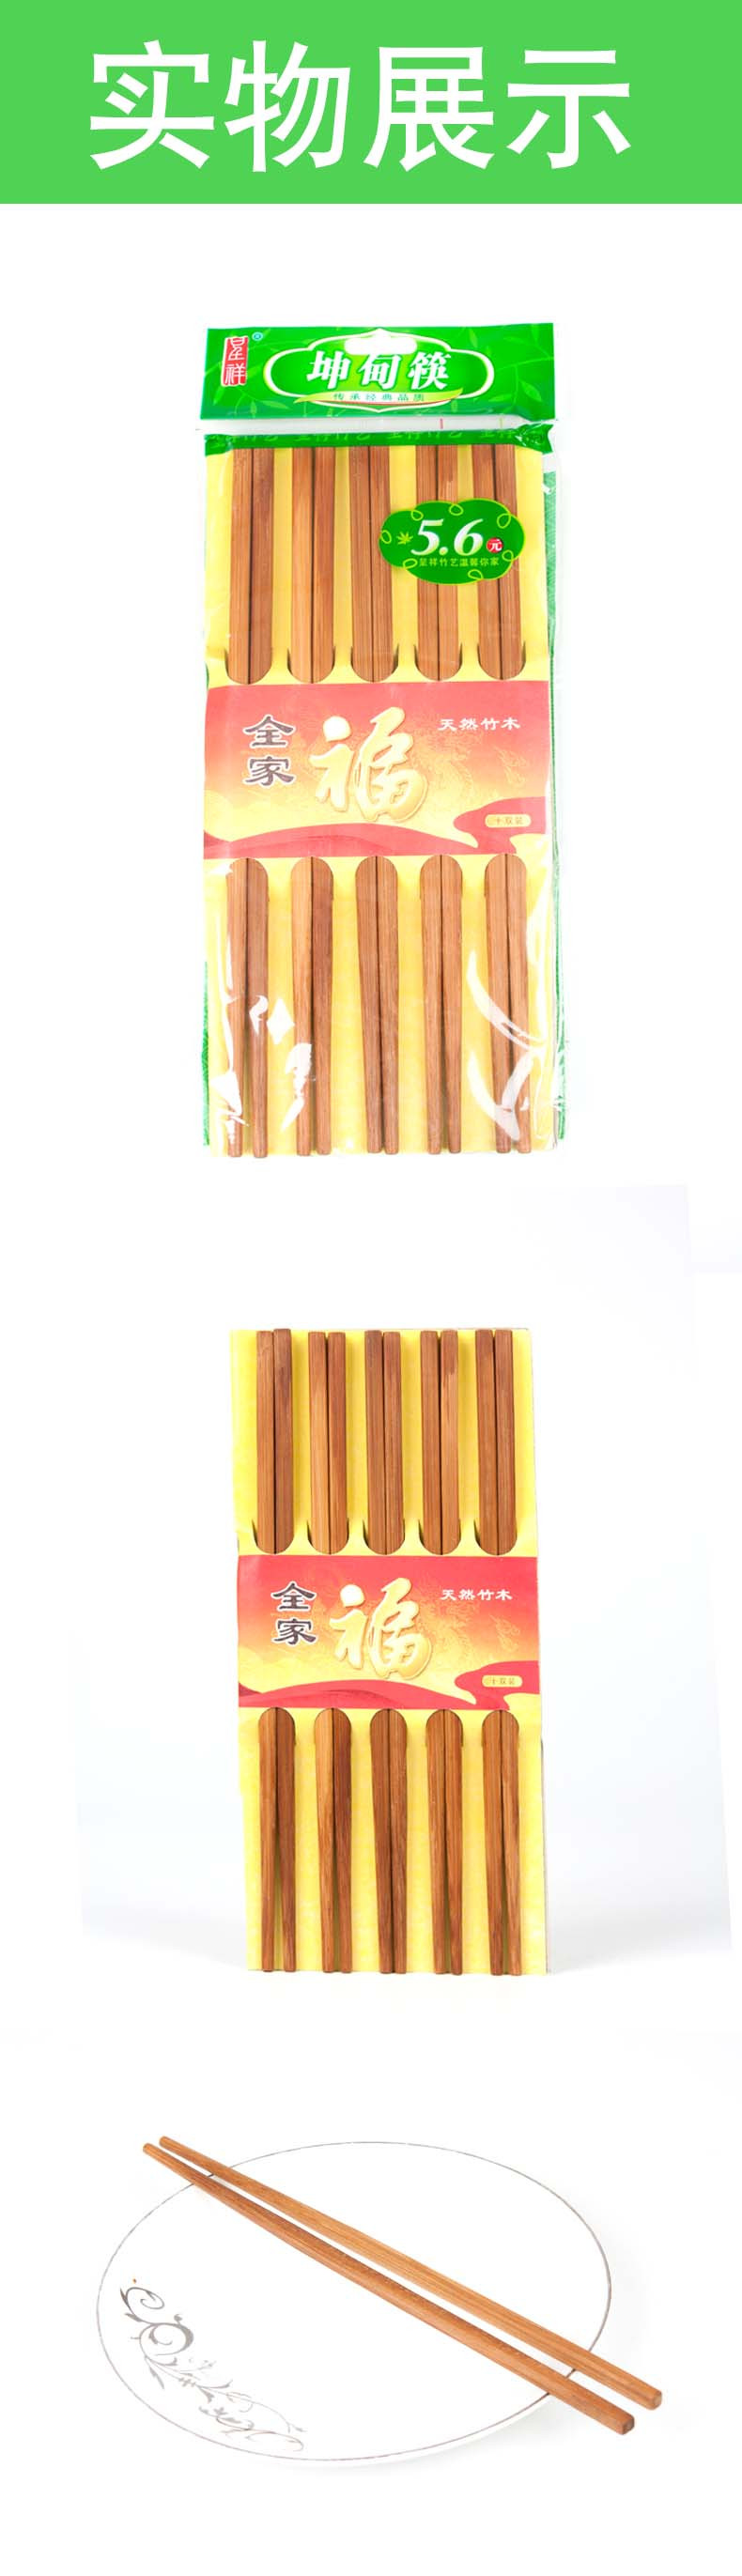 【邮乐濮阳馆】QF-雪鸟 坤甸筷 1.99元1板  天然竹木 全家福  10板包邮